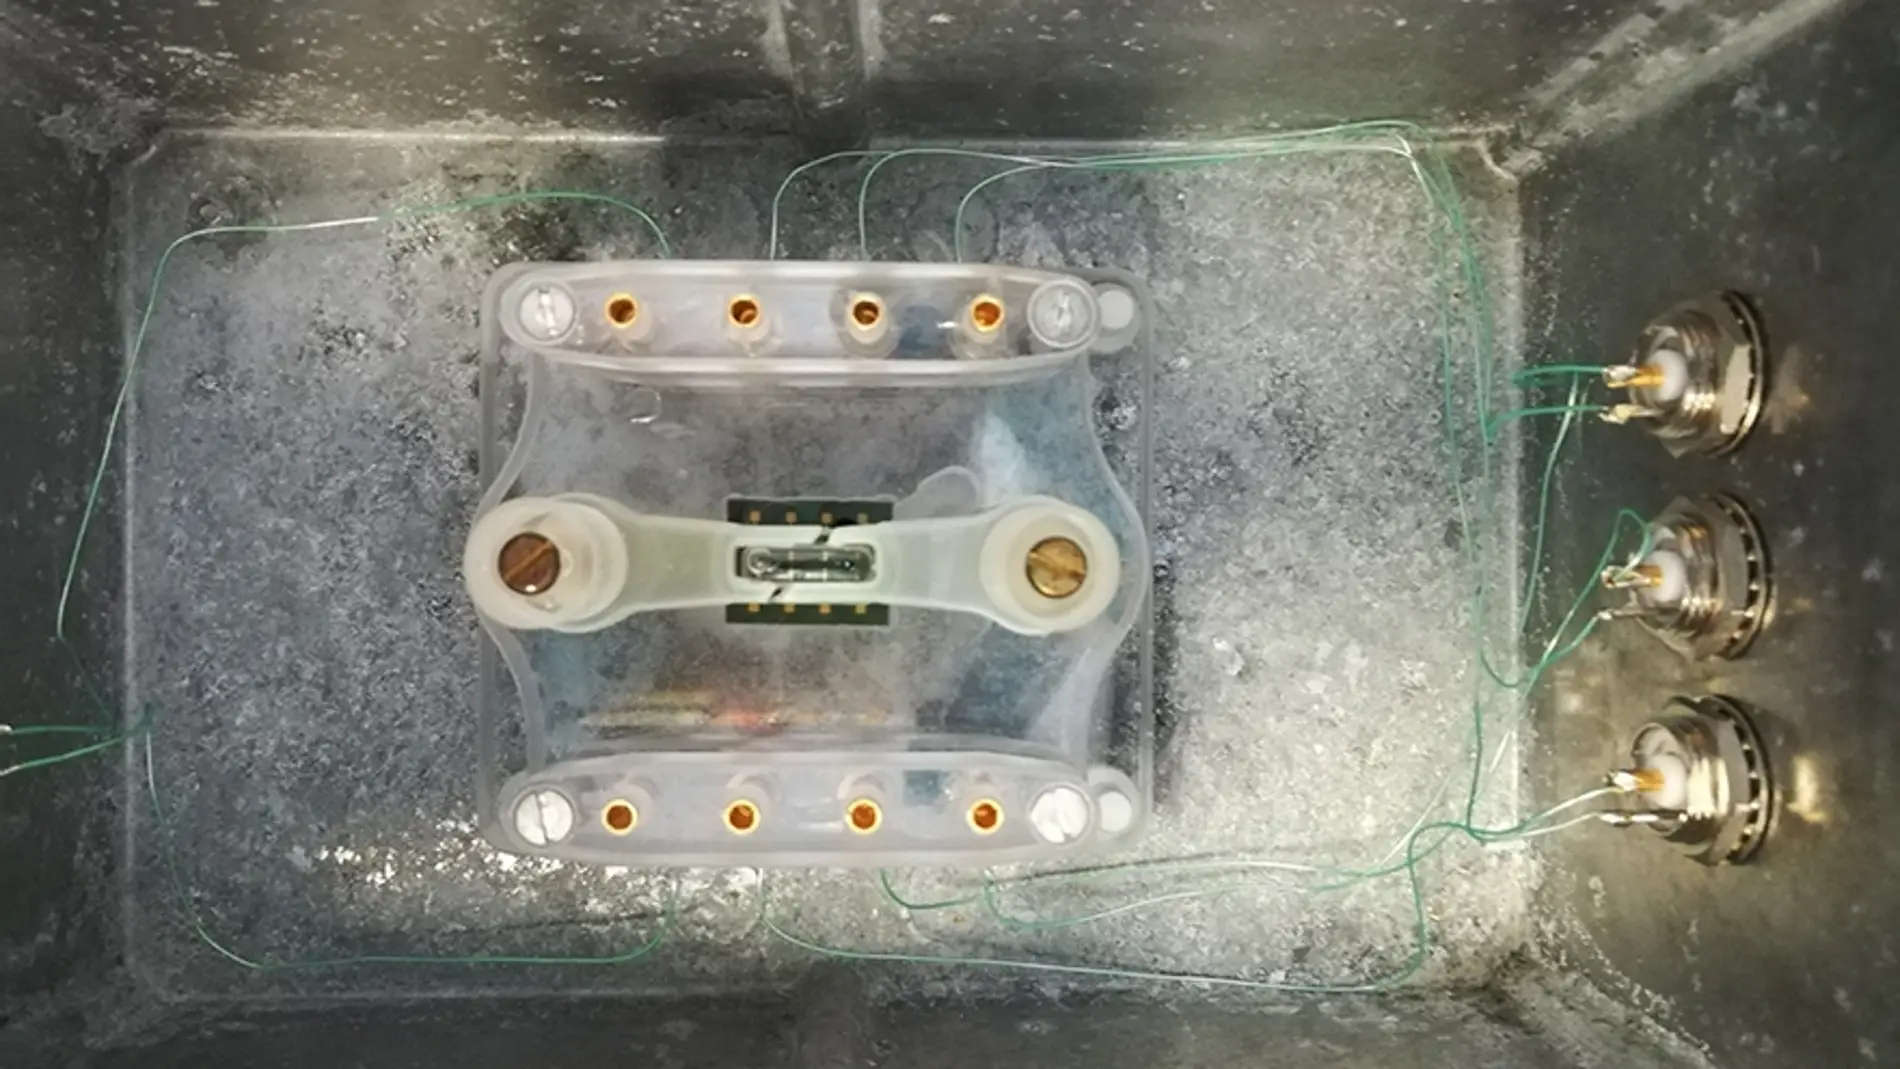 Montaje del chip de silicio empleado dentro de la caja que será introducida en el incubador